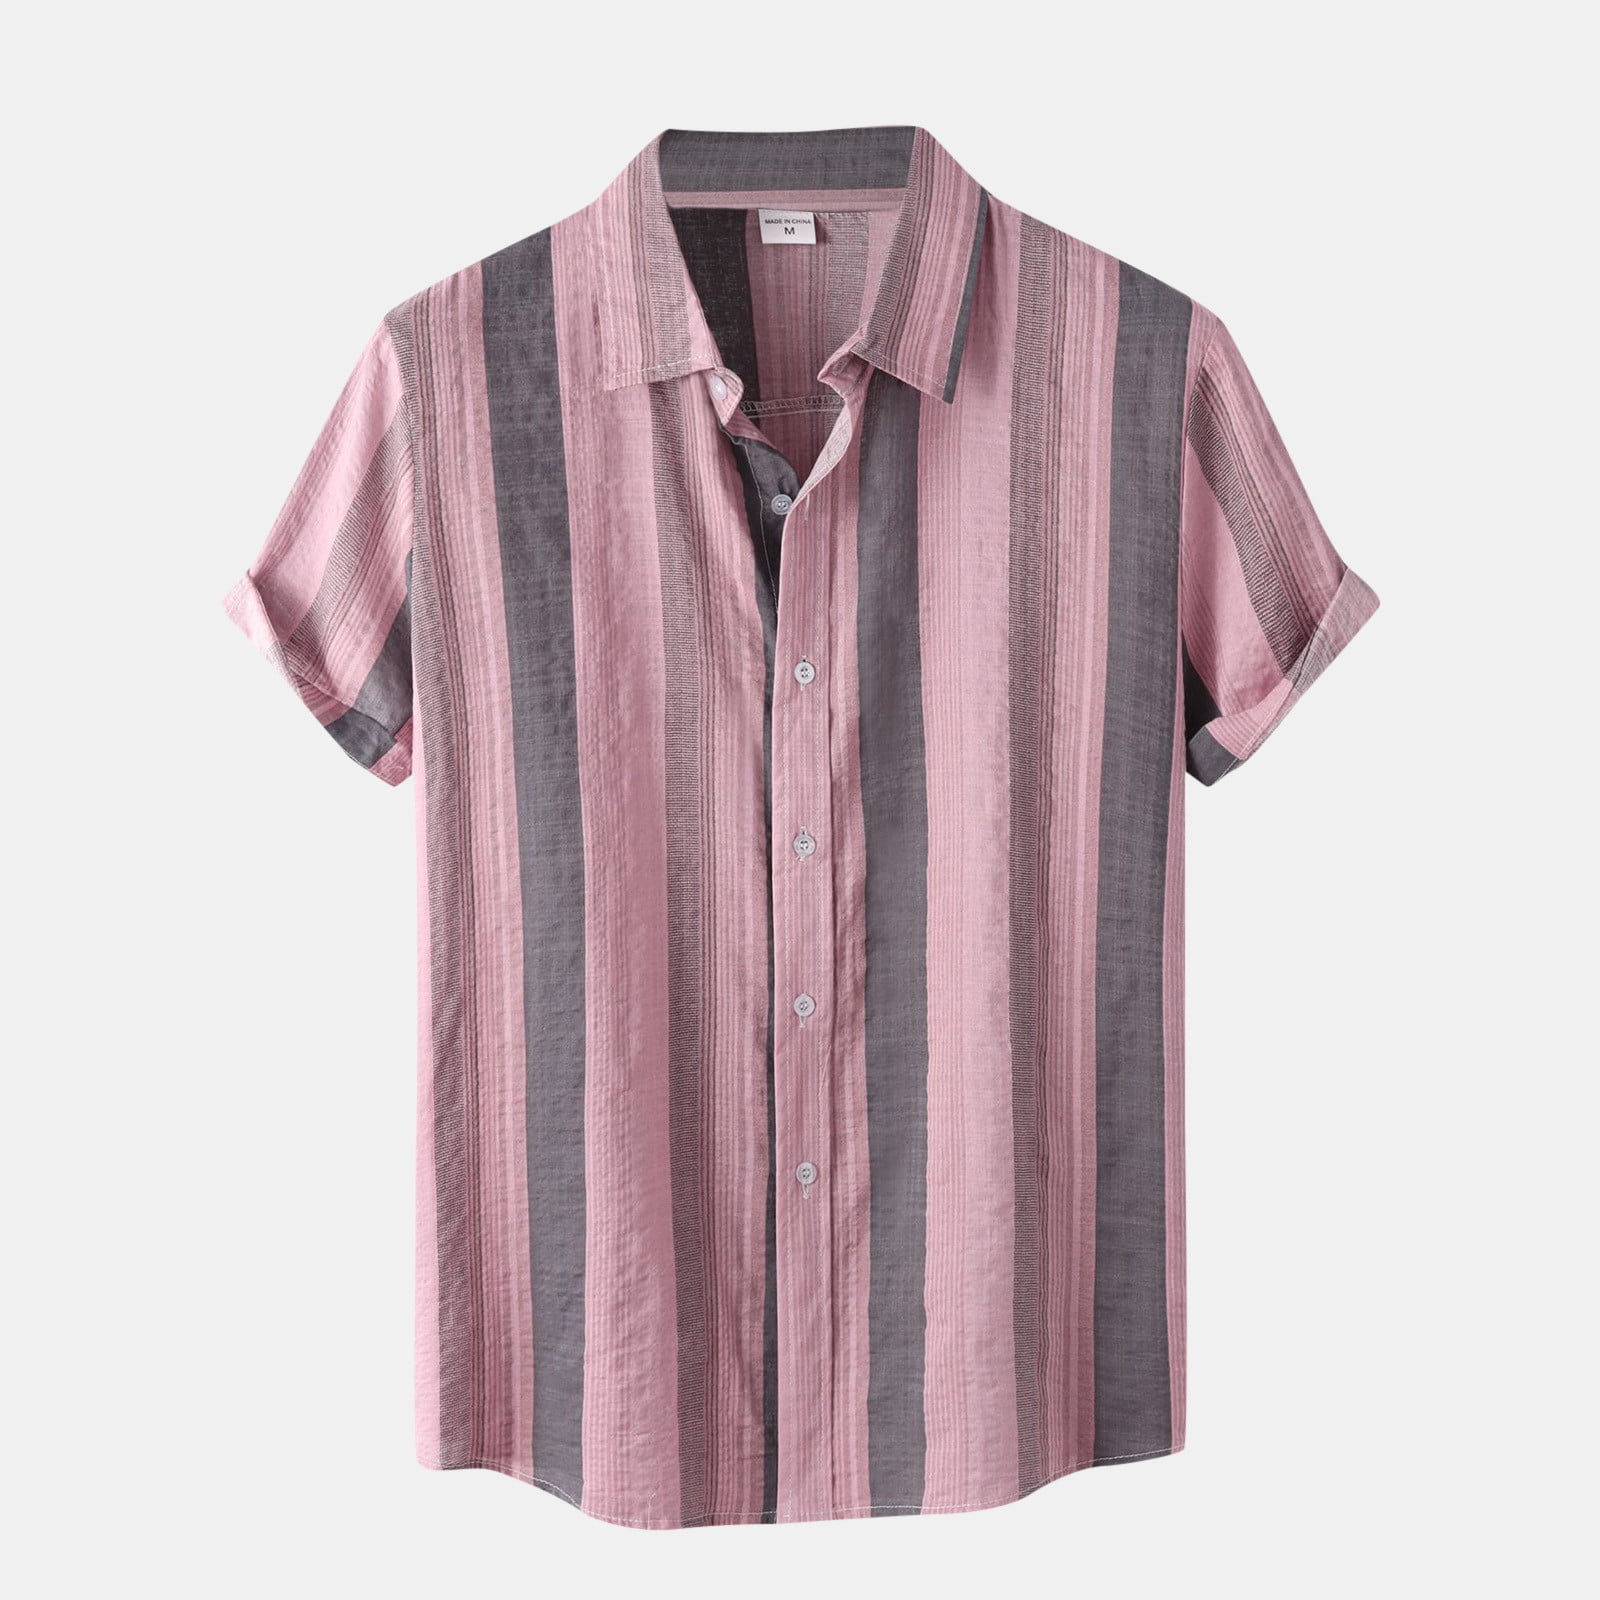 MRULIC mens shirts Sleeve Stripe Turn-Down Men's Short Shirt Shirt ...